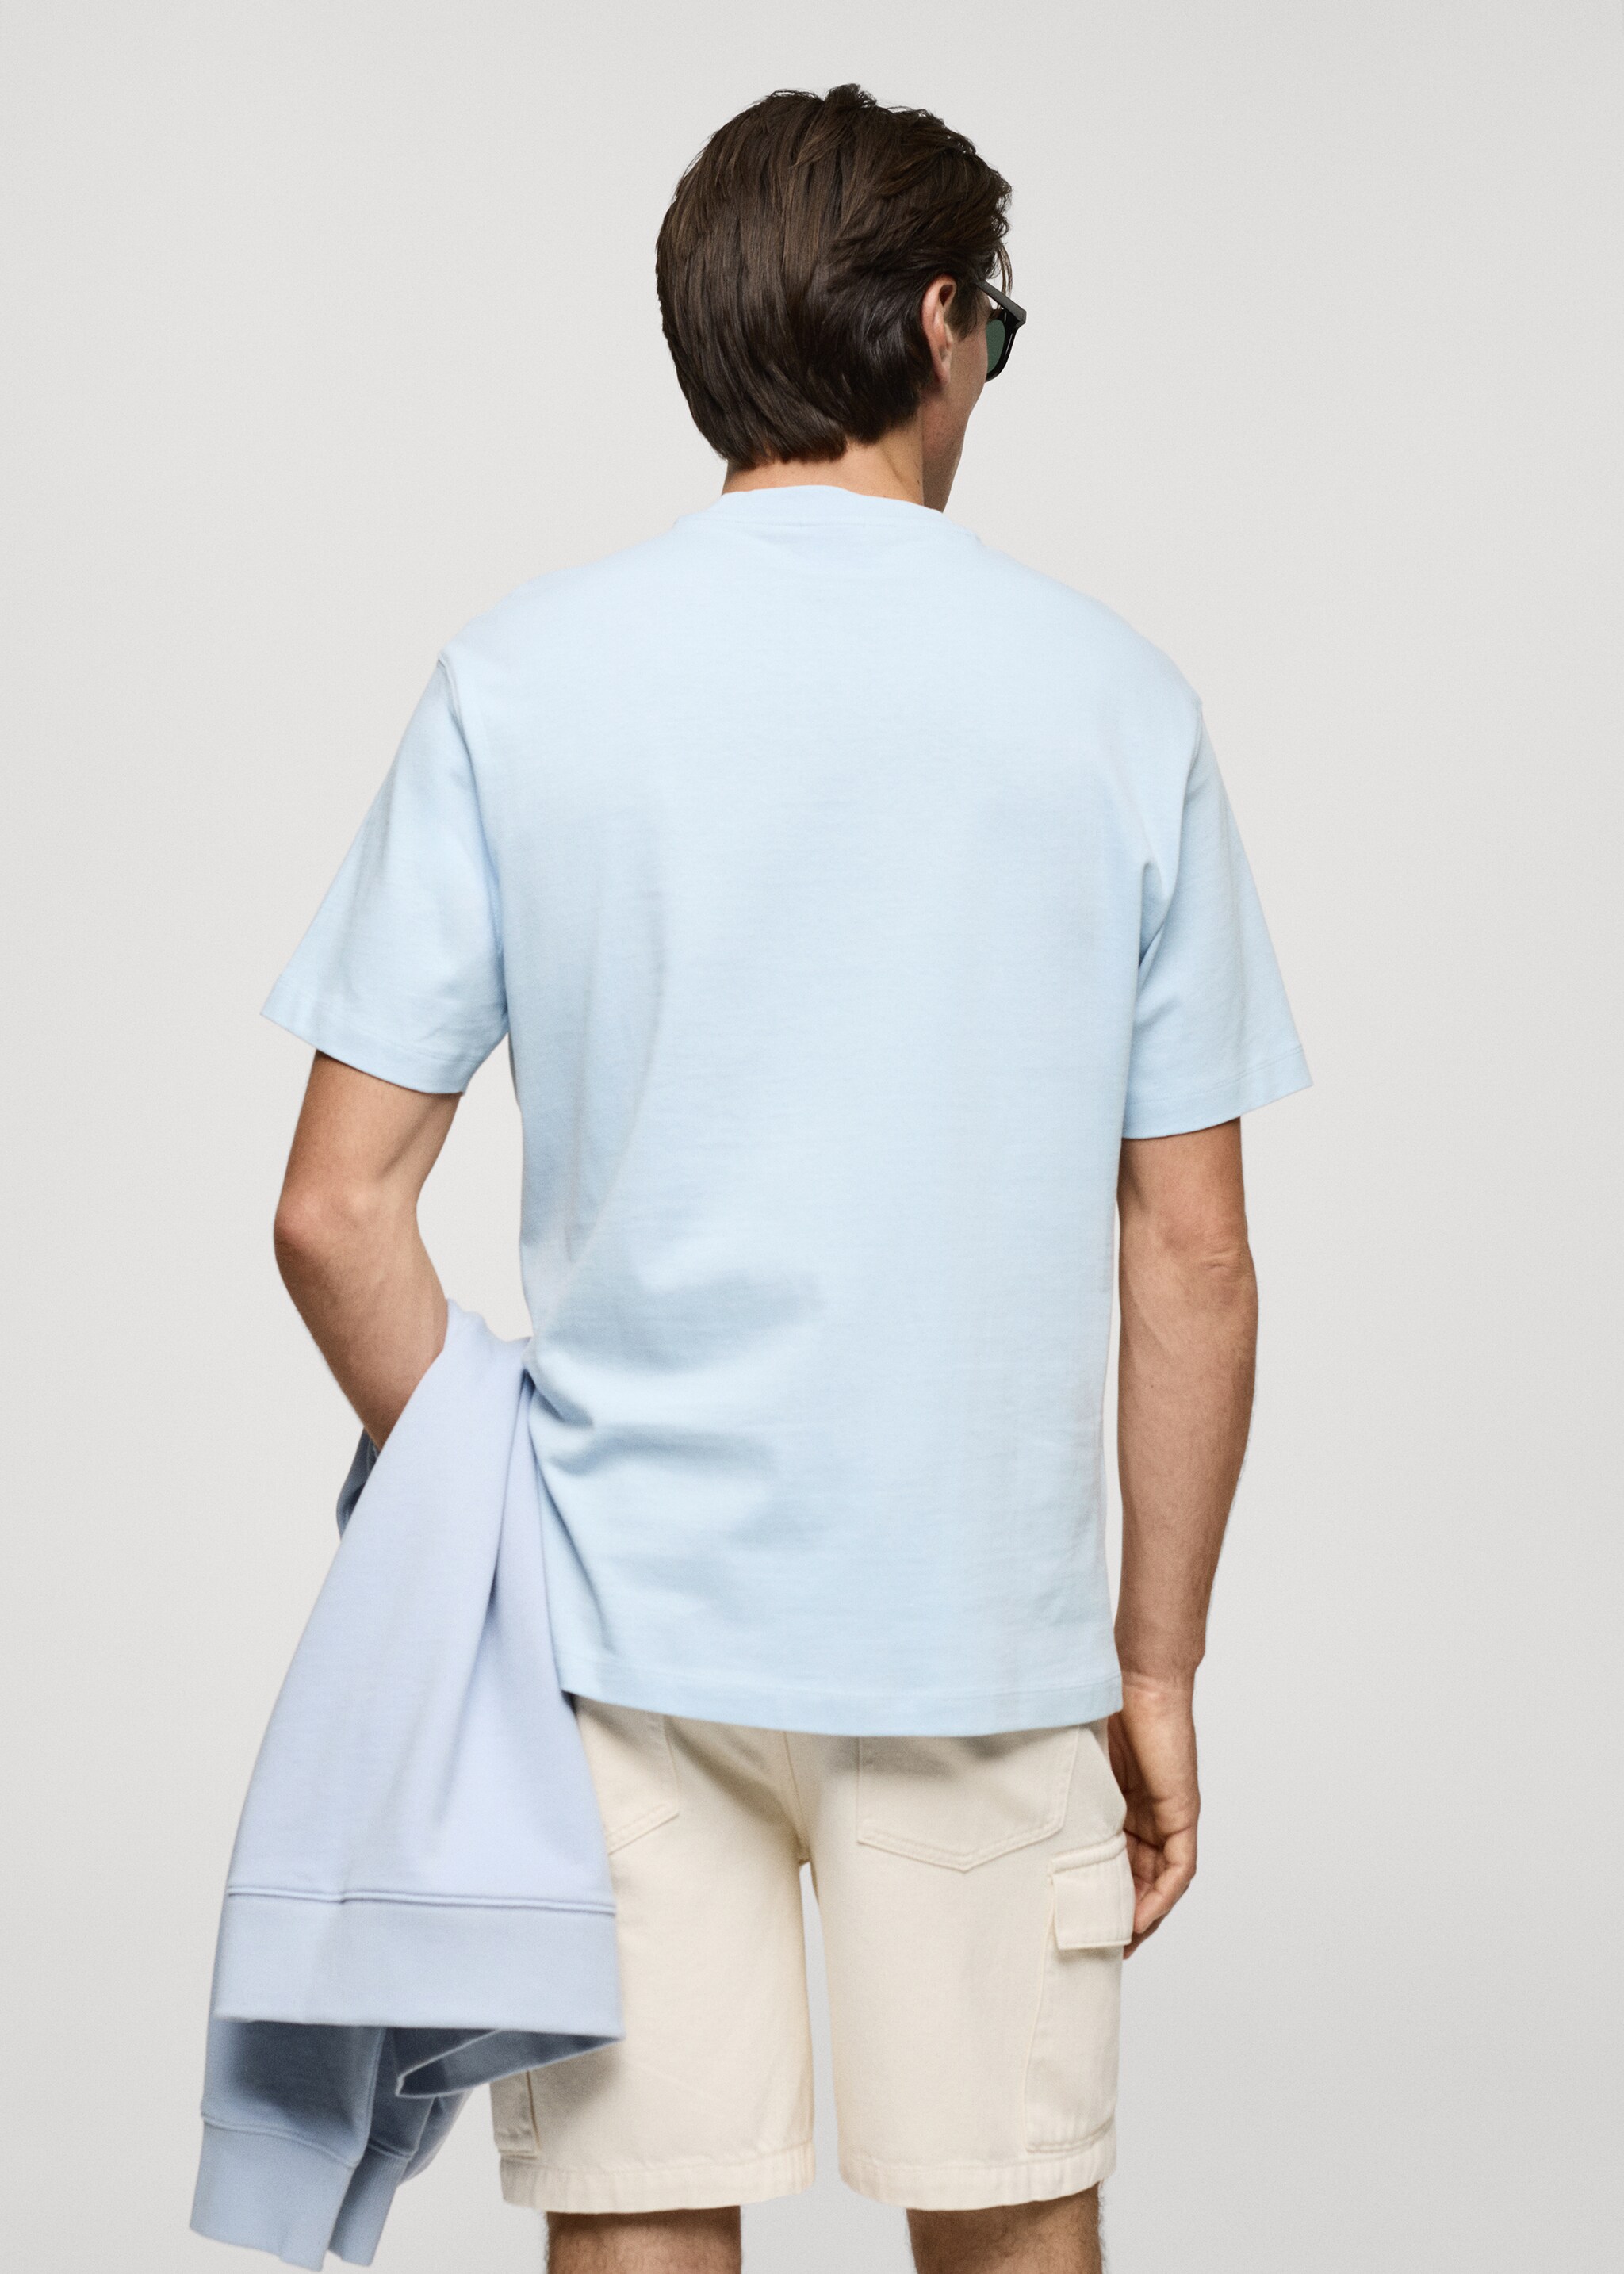 Базовая футболка 100% хлопок relaxed fit - Обратная сторона изделия